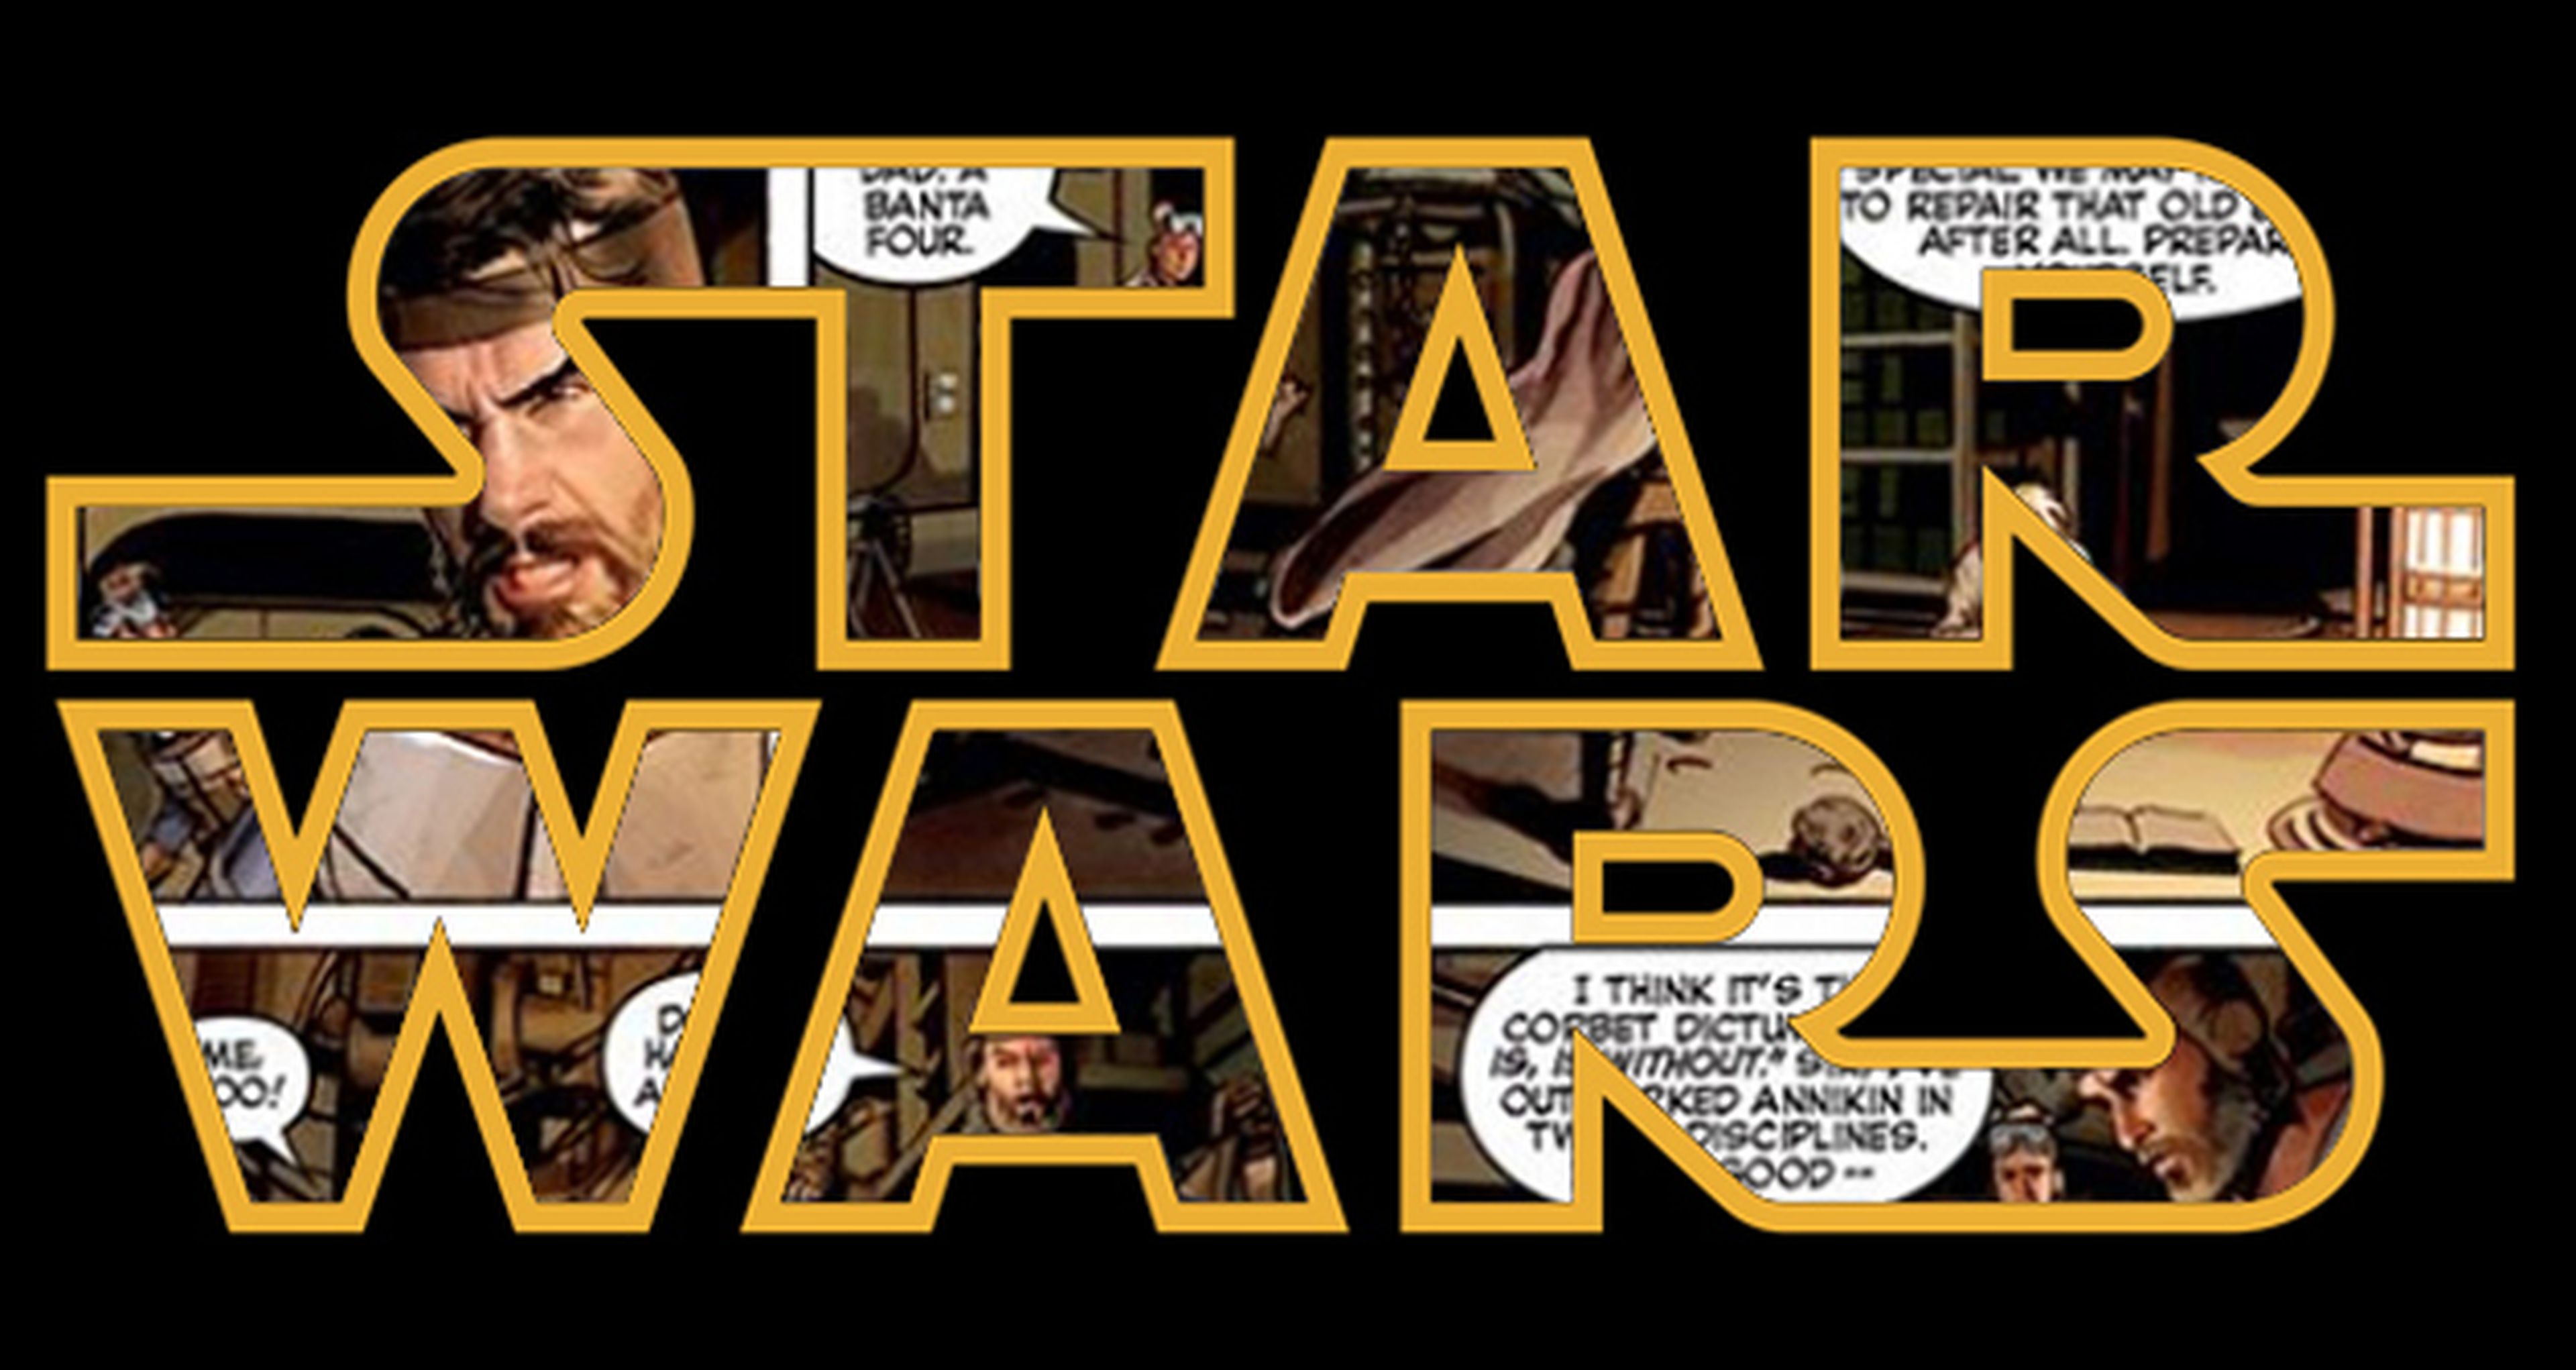 Así es The Star Wars, el cómic del guión original de George Lucas